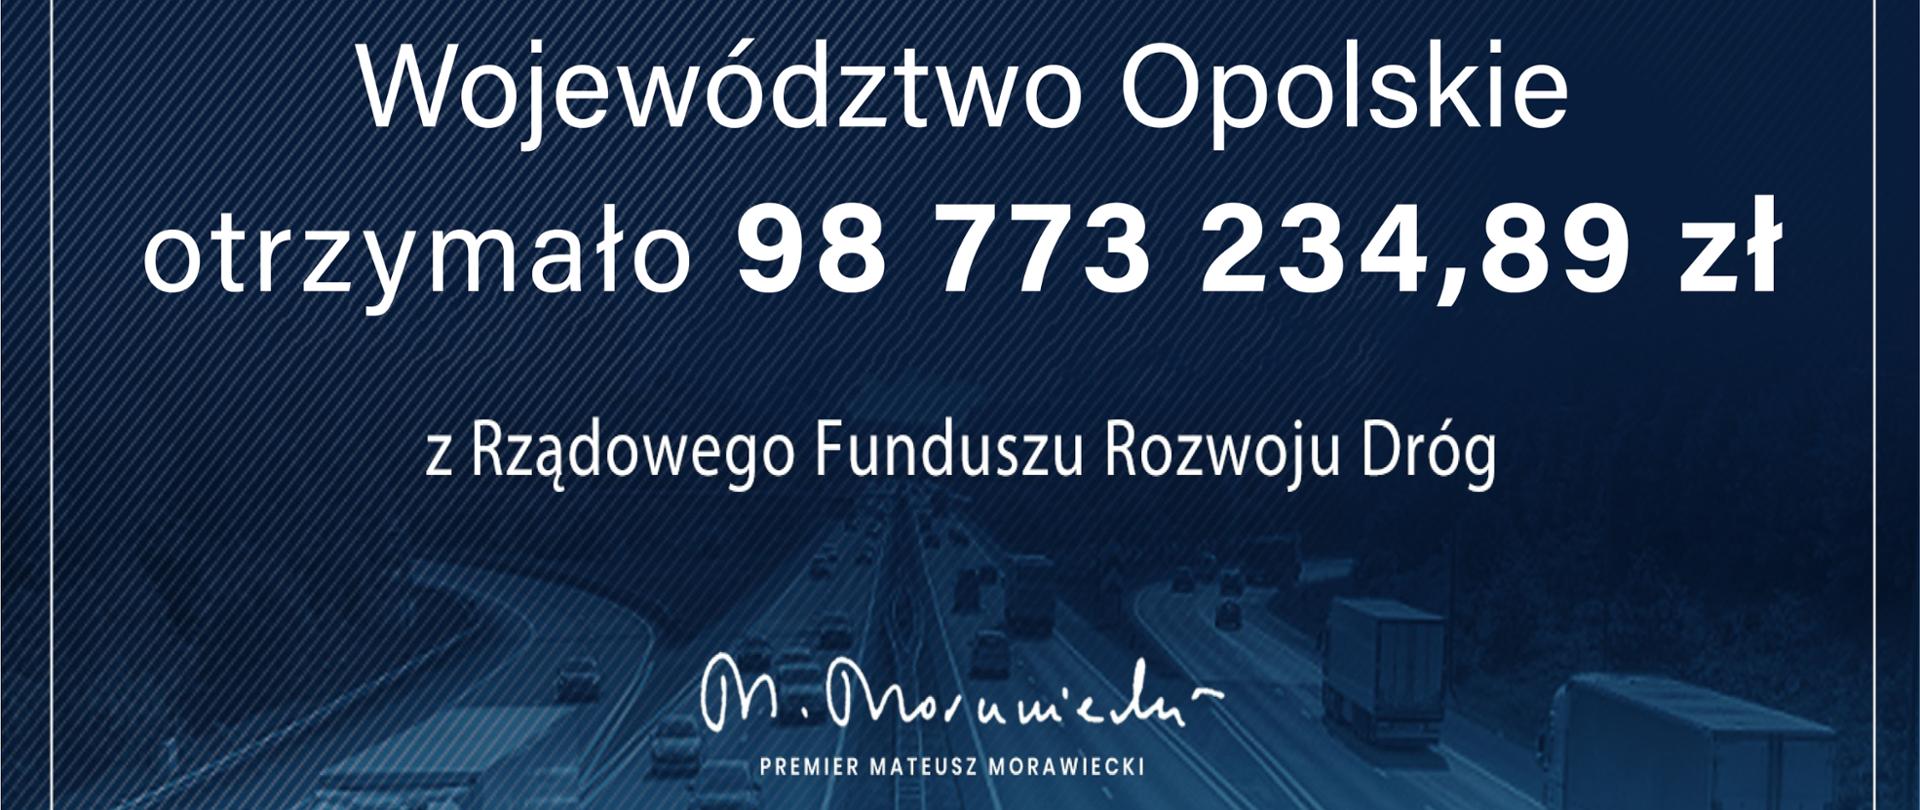 Na czeku widnieje napis "Rządowy Fundusz Rozwoju Dróg. Województwo Opolskie otrzymało kwotę 98773234 zł i 89 groszy z Rządowego Funduszu Rozwoju Dróg" oraz podpis premiera M. Morawieckiego.